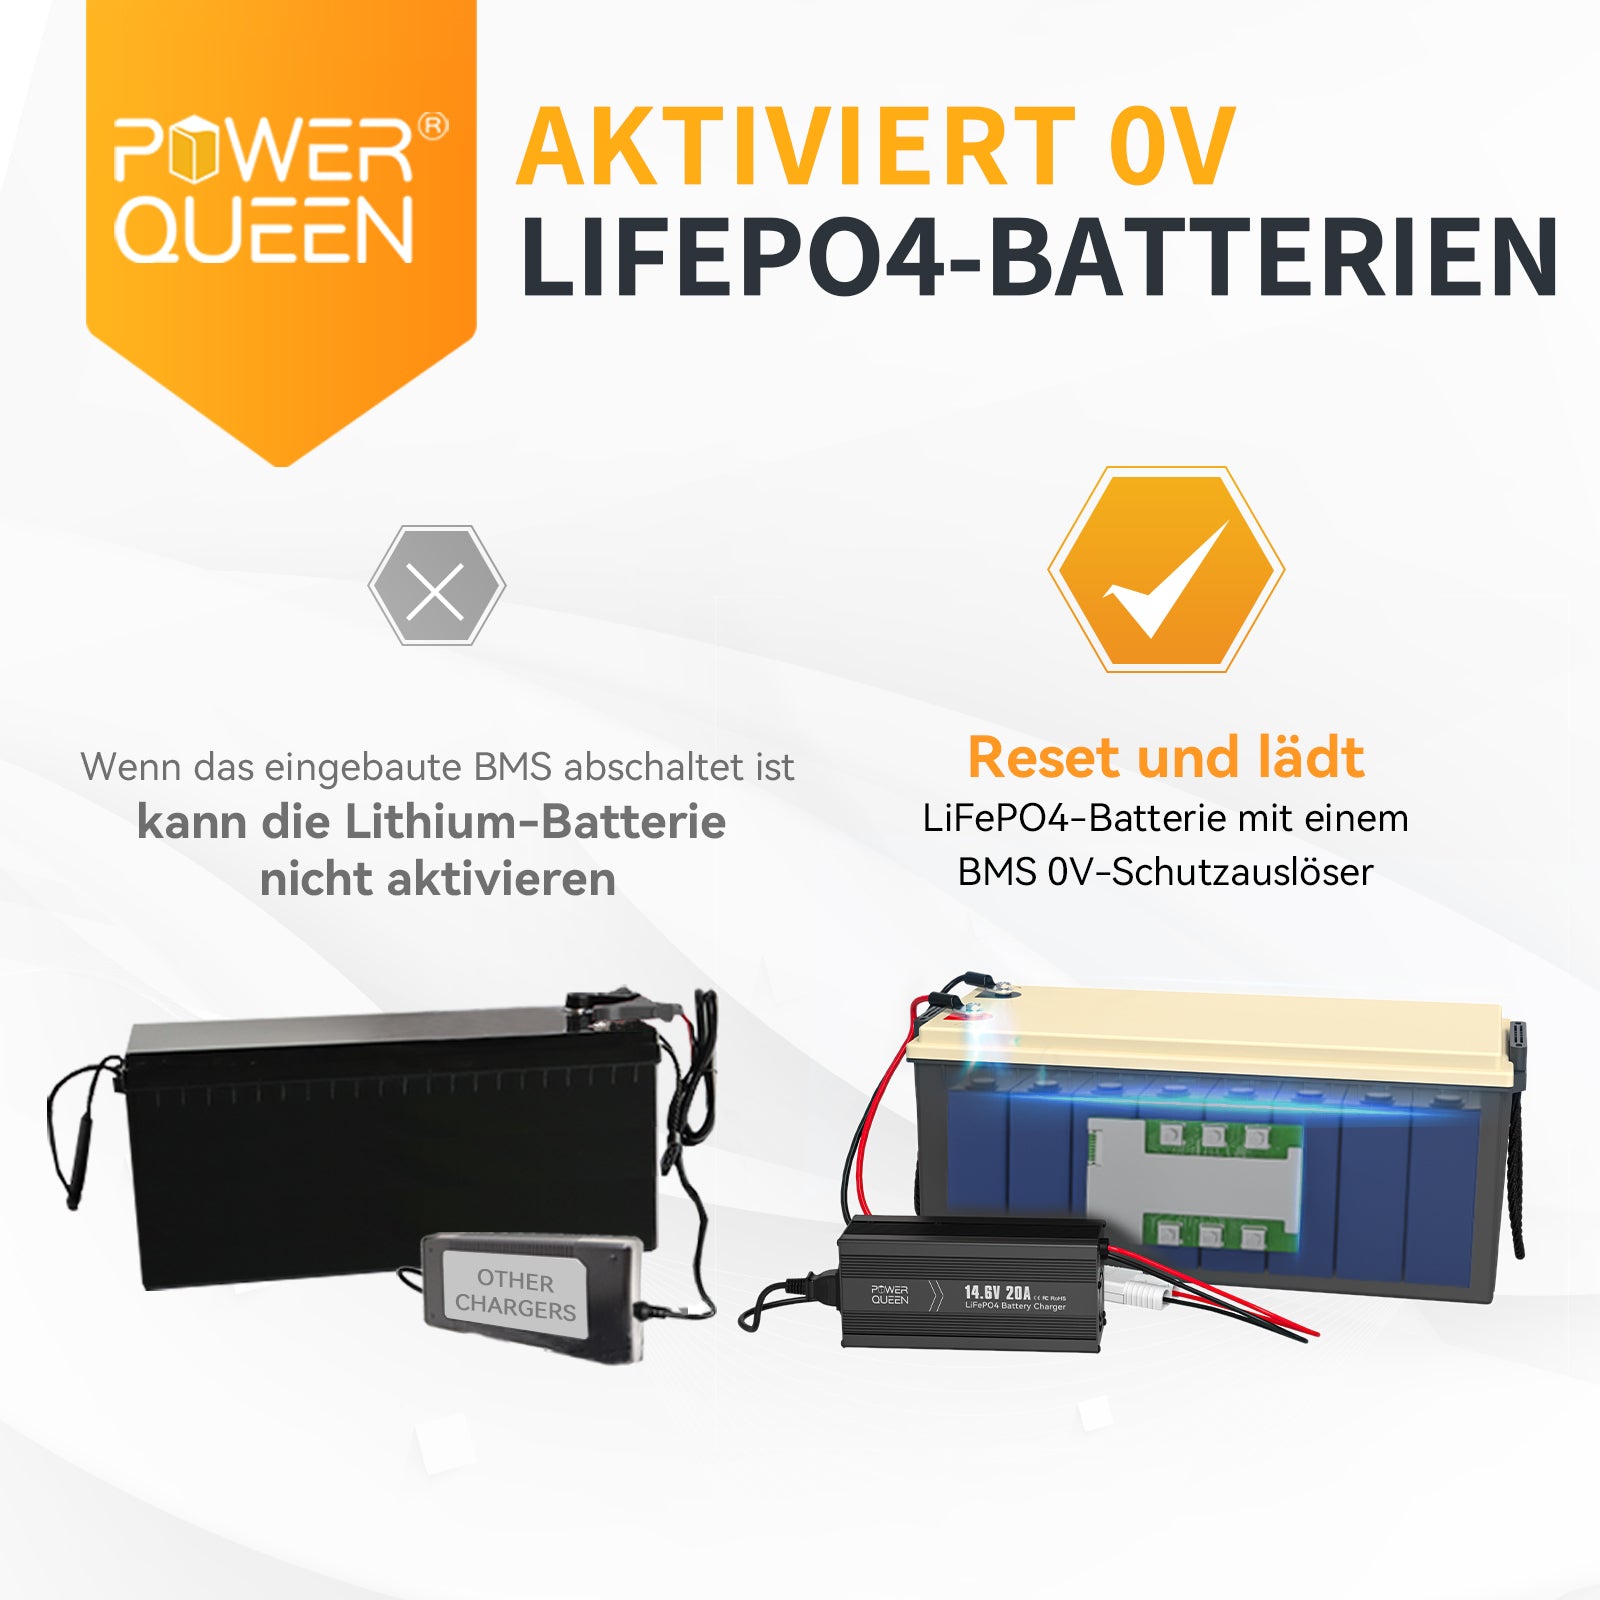 Cargador Power Queen 14.6V 20A LiFePO4 para batería LiFePO4 de 12V